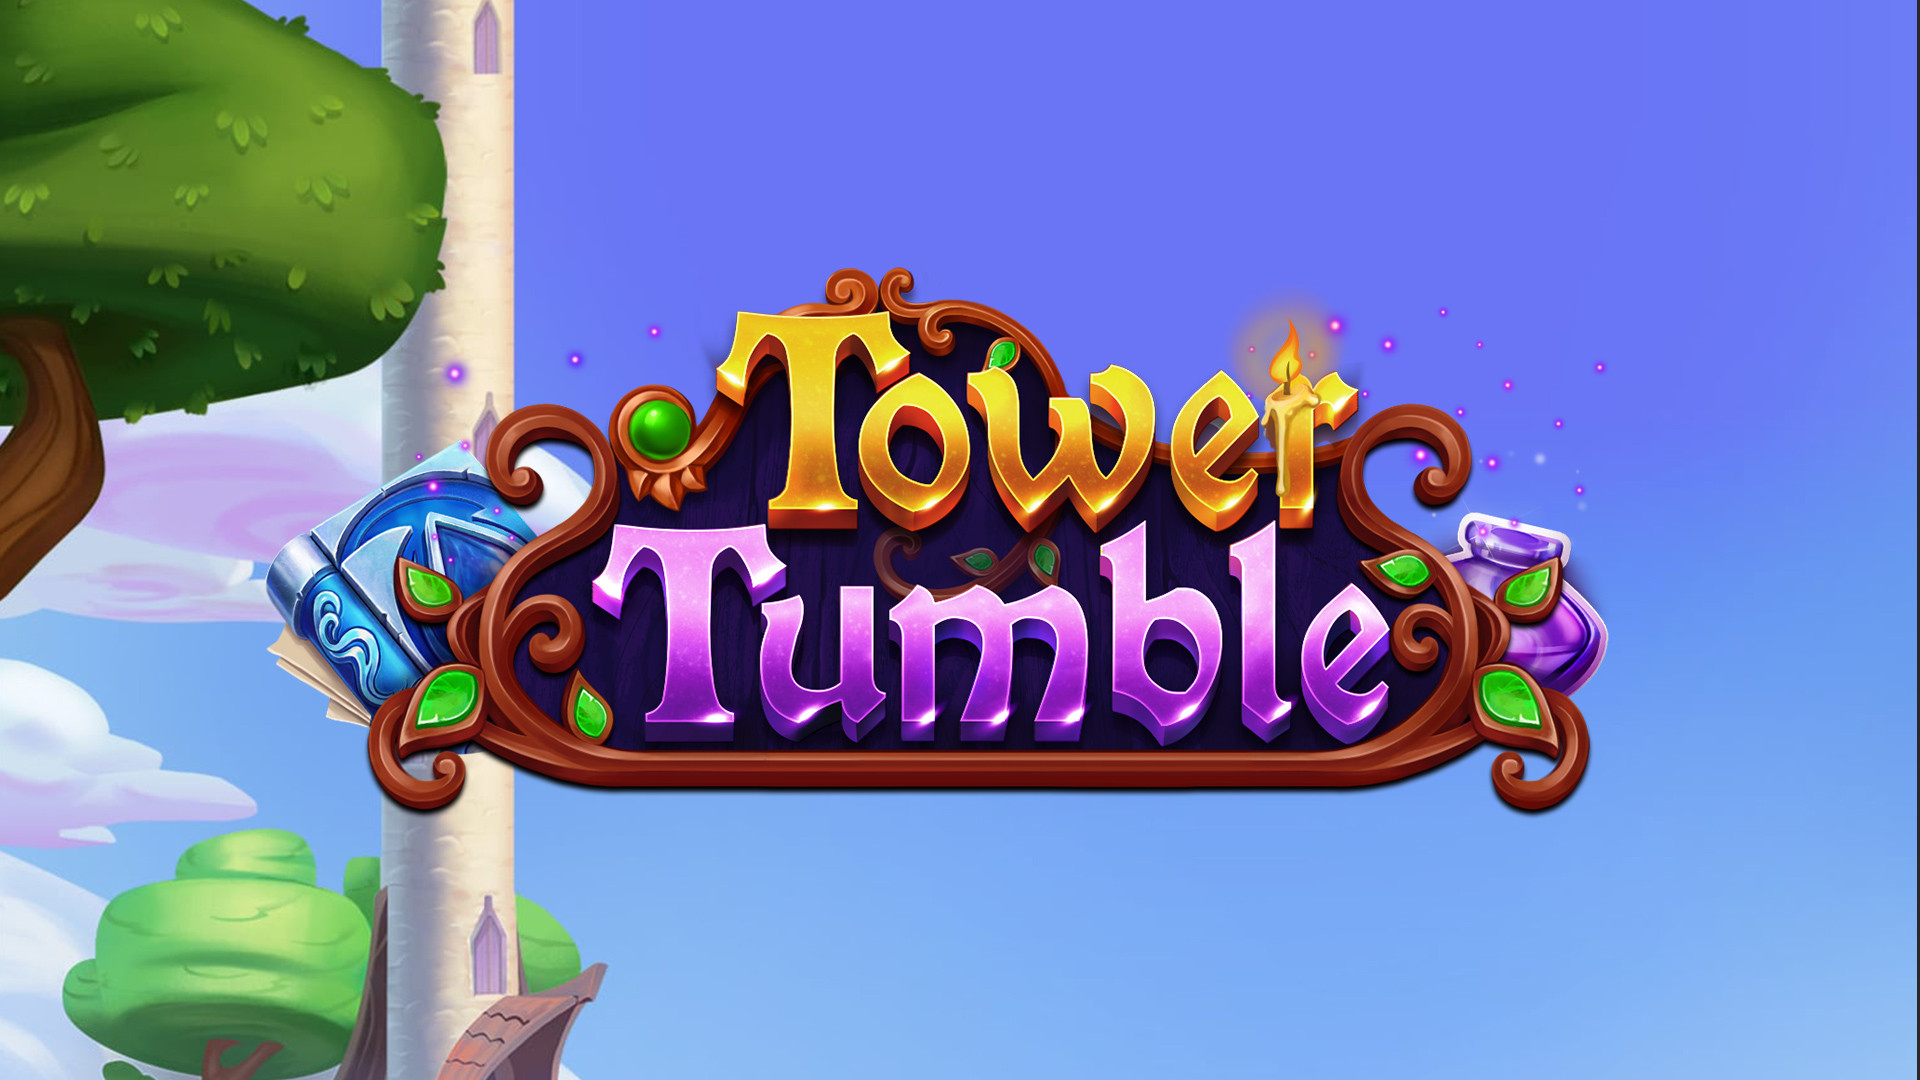 Tower Tumble